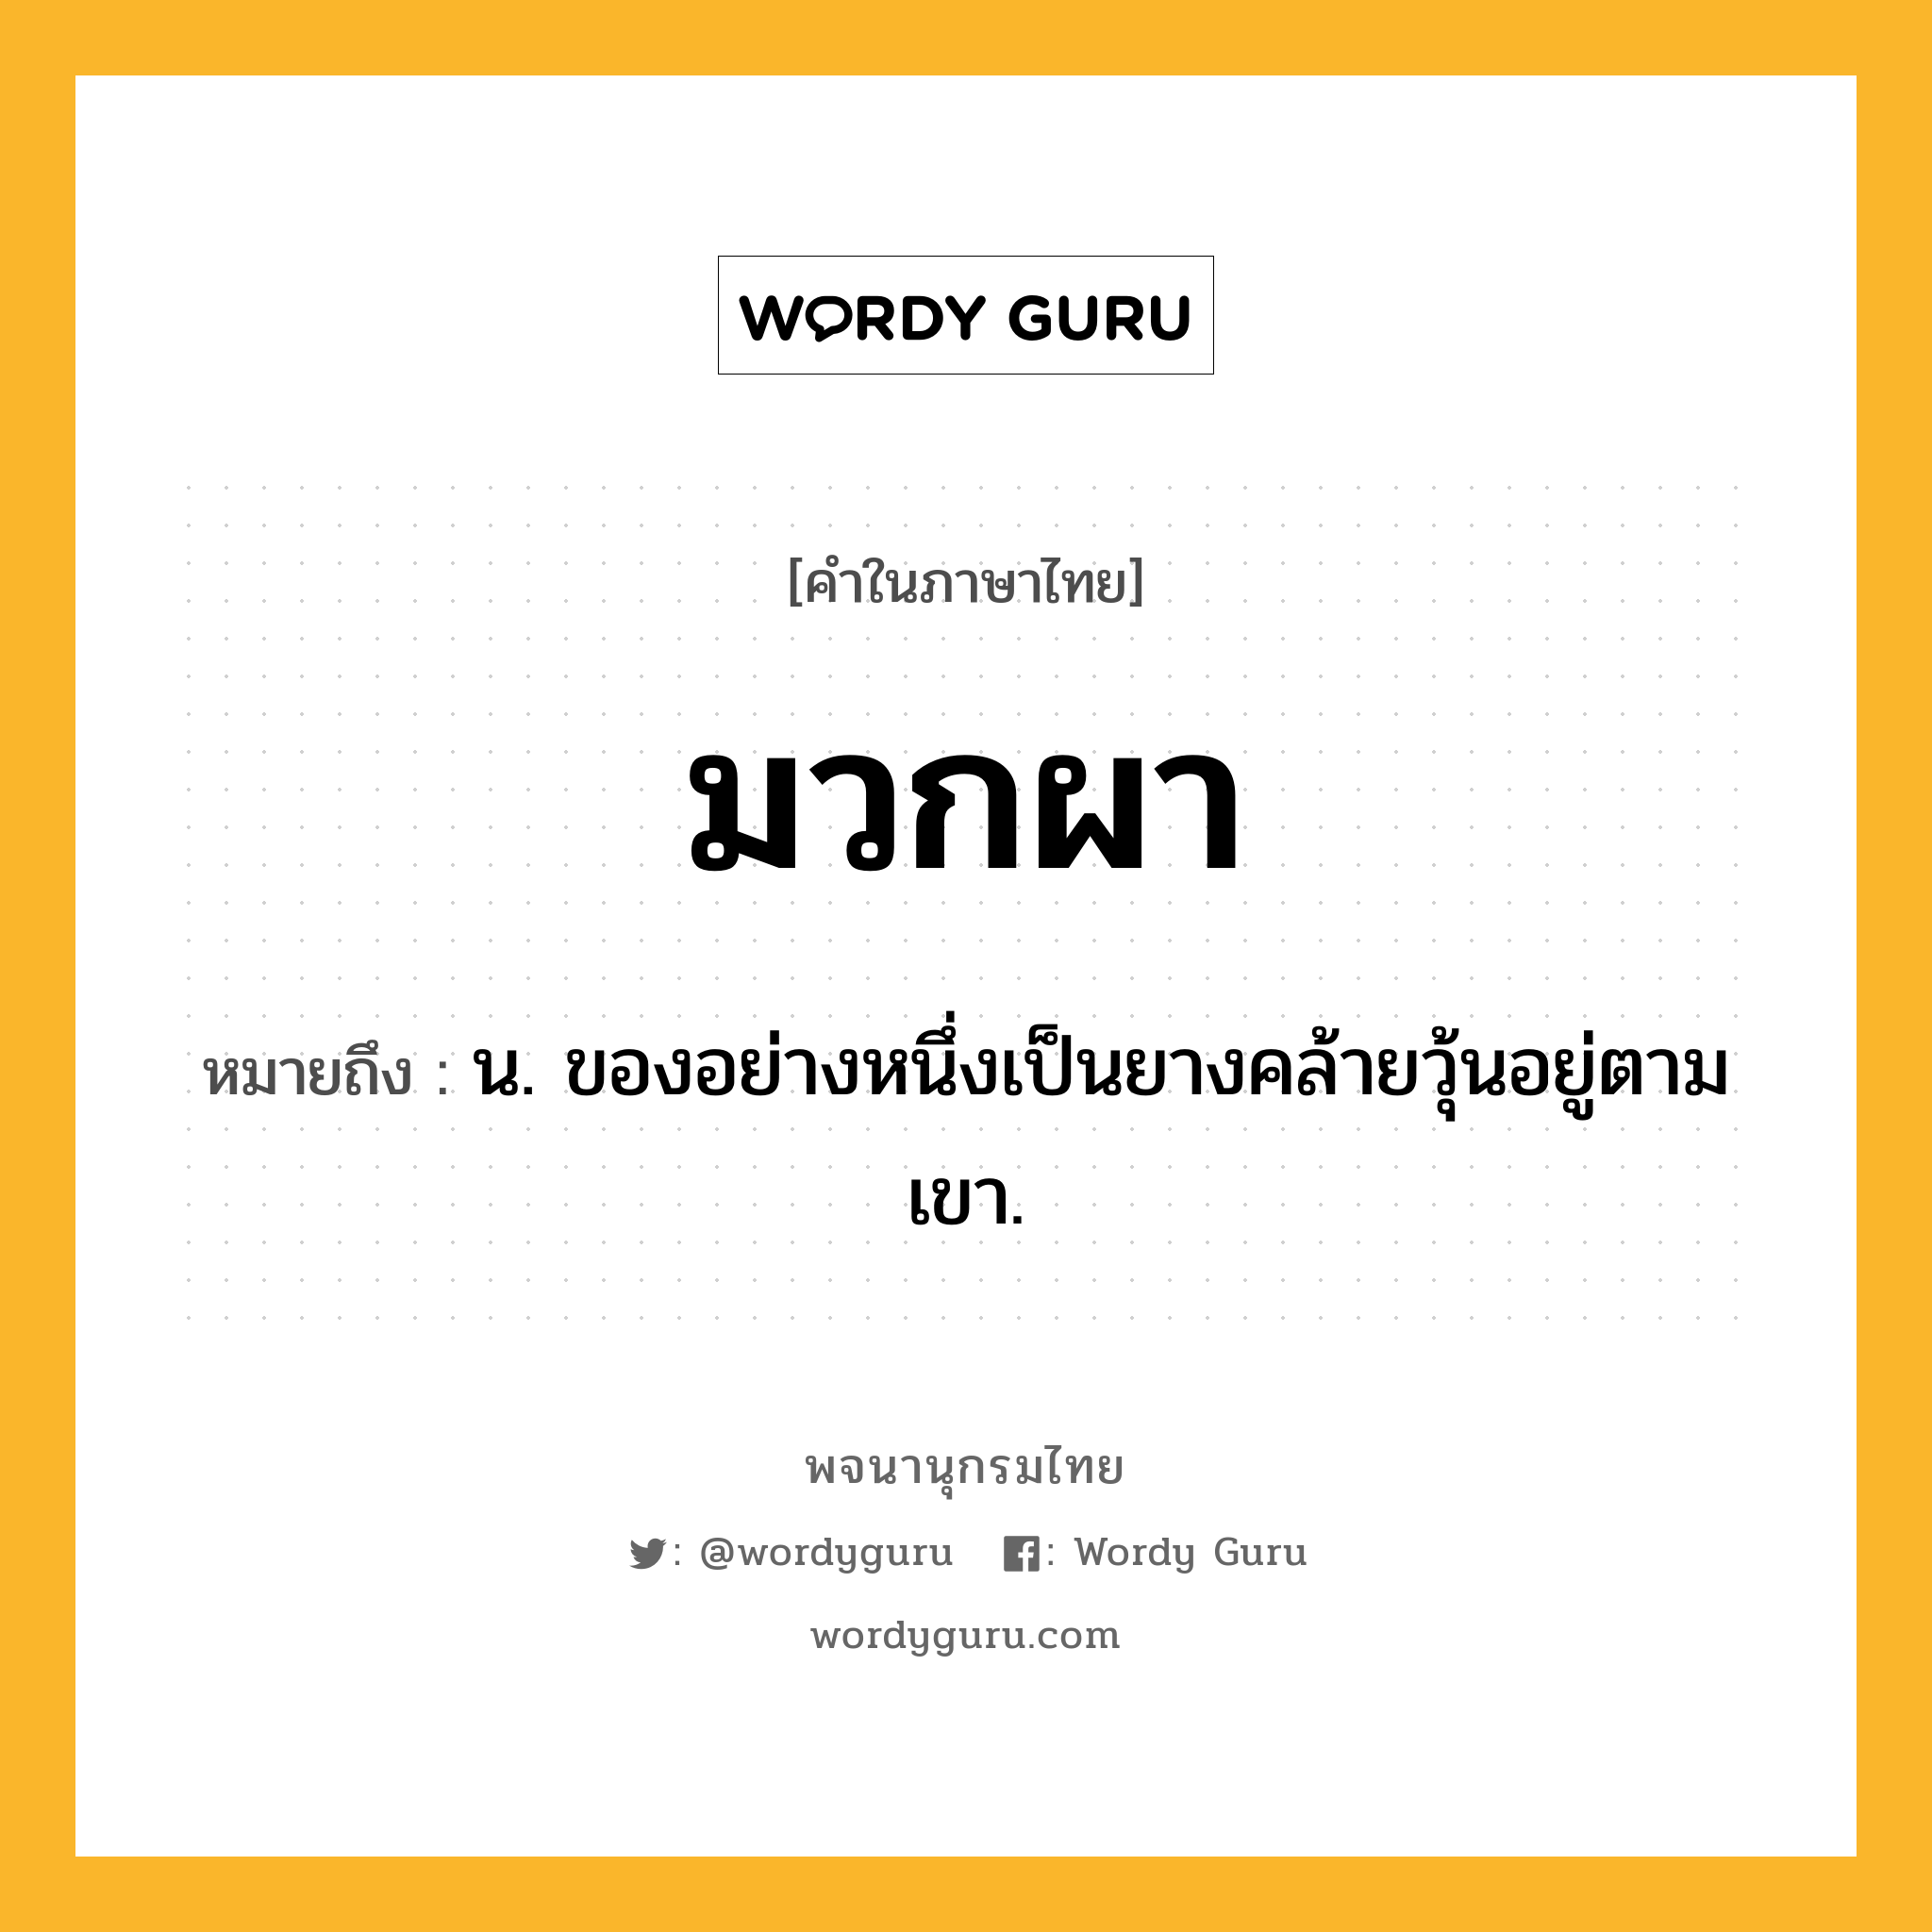 มวกผา ความหมาย หมายถึงอะไร?, คำในภาษาไทย มวกผา หมายถึง น. ของอย่างหนึ่งเป็นยางคล้ายวุ้นอยู่ตามเขา.